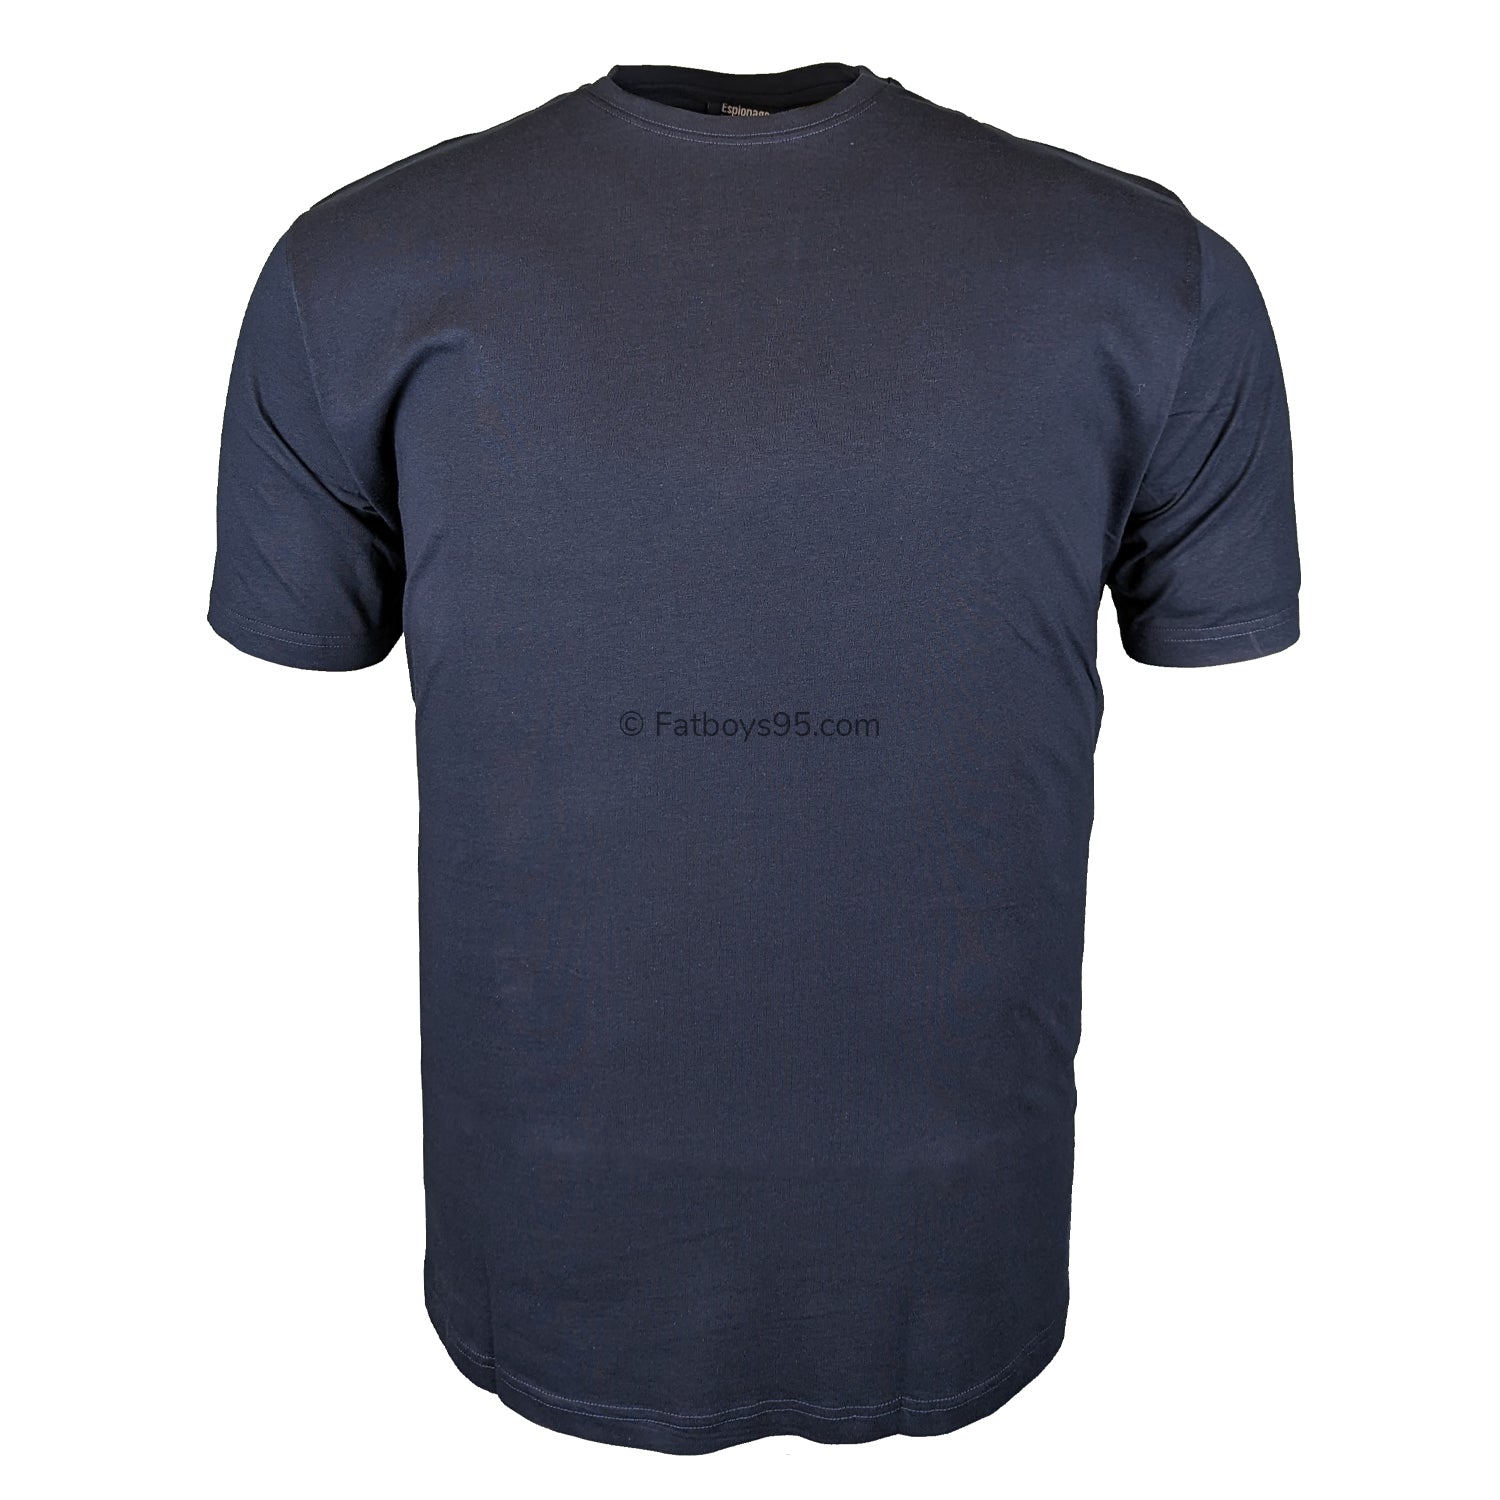 Espionage Plain Round Neck T-Shirt - T015 - Navy 1